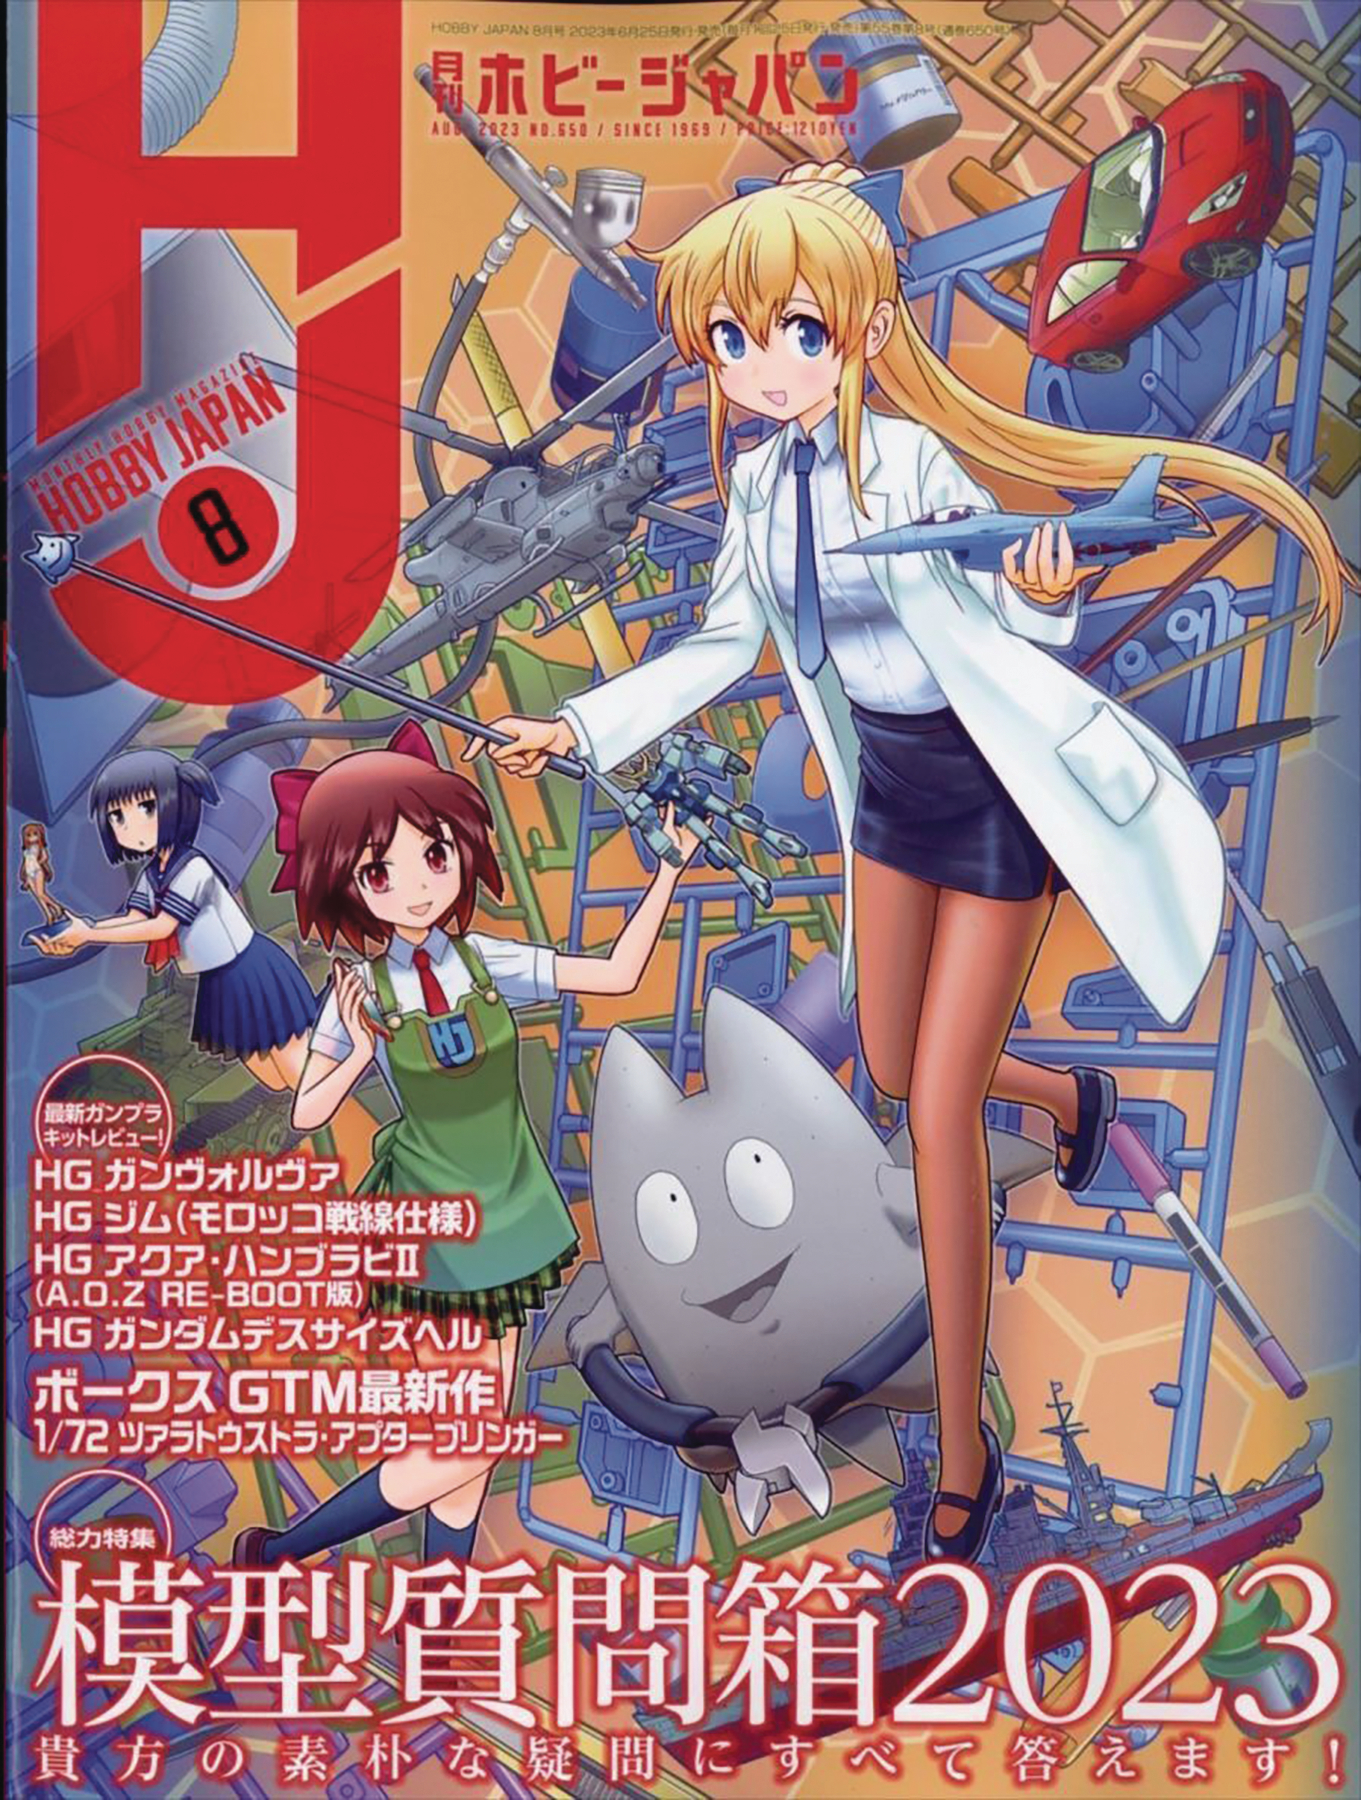 HOBBY JAPAN Japanese Anime Magazine June 1991 No 265 GUNDAM Book H3 | eBay